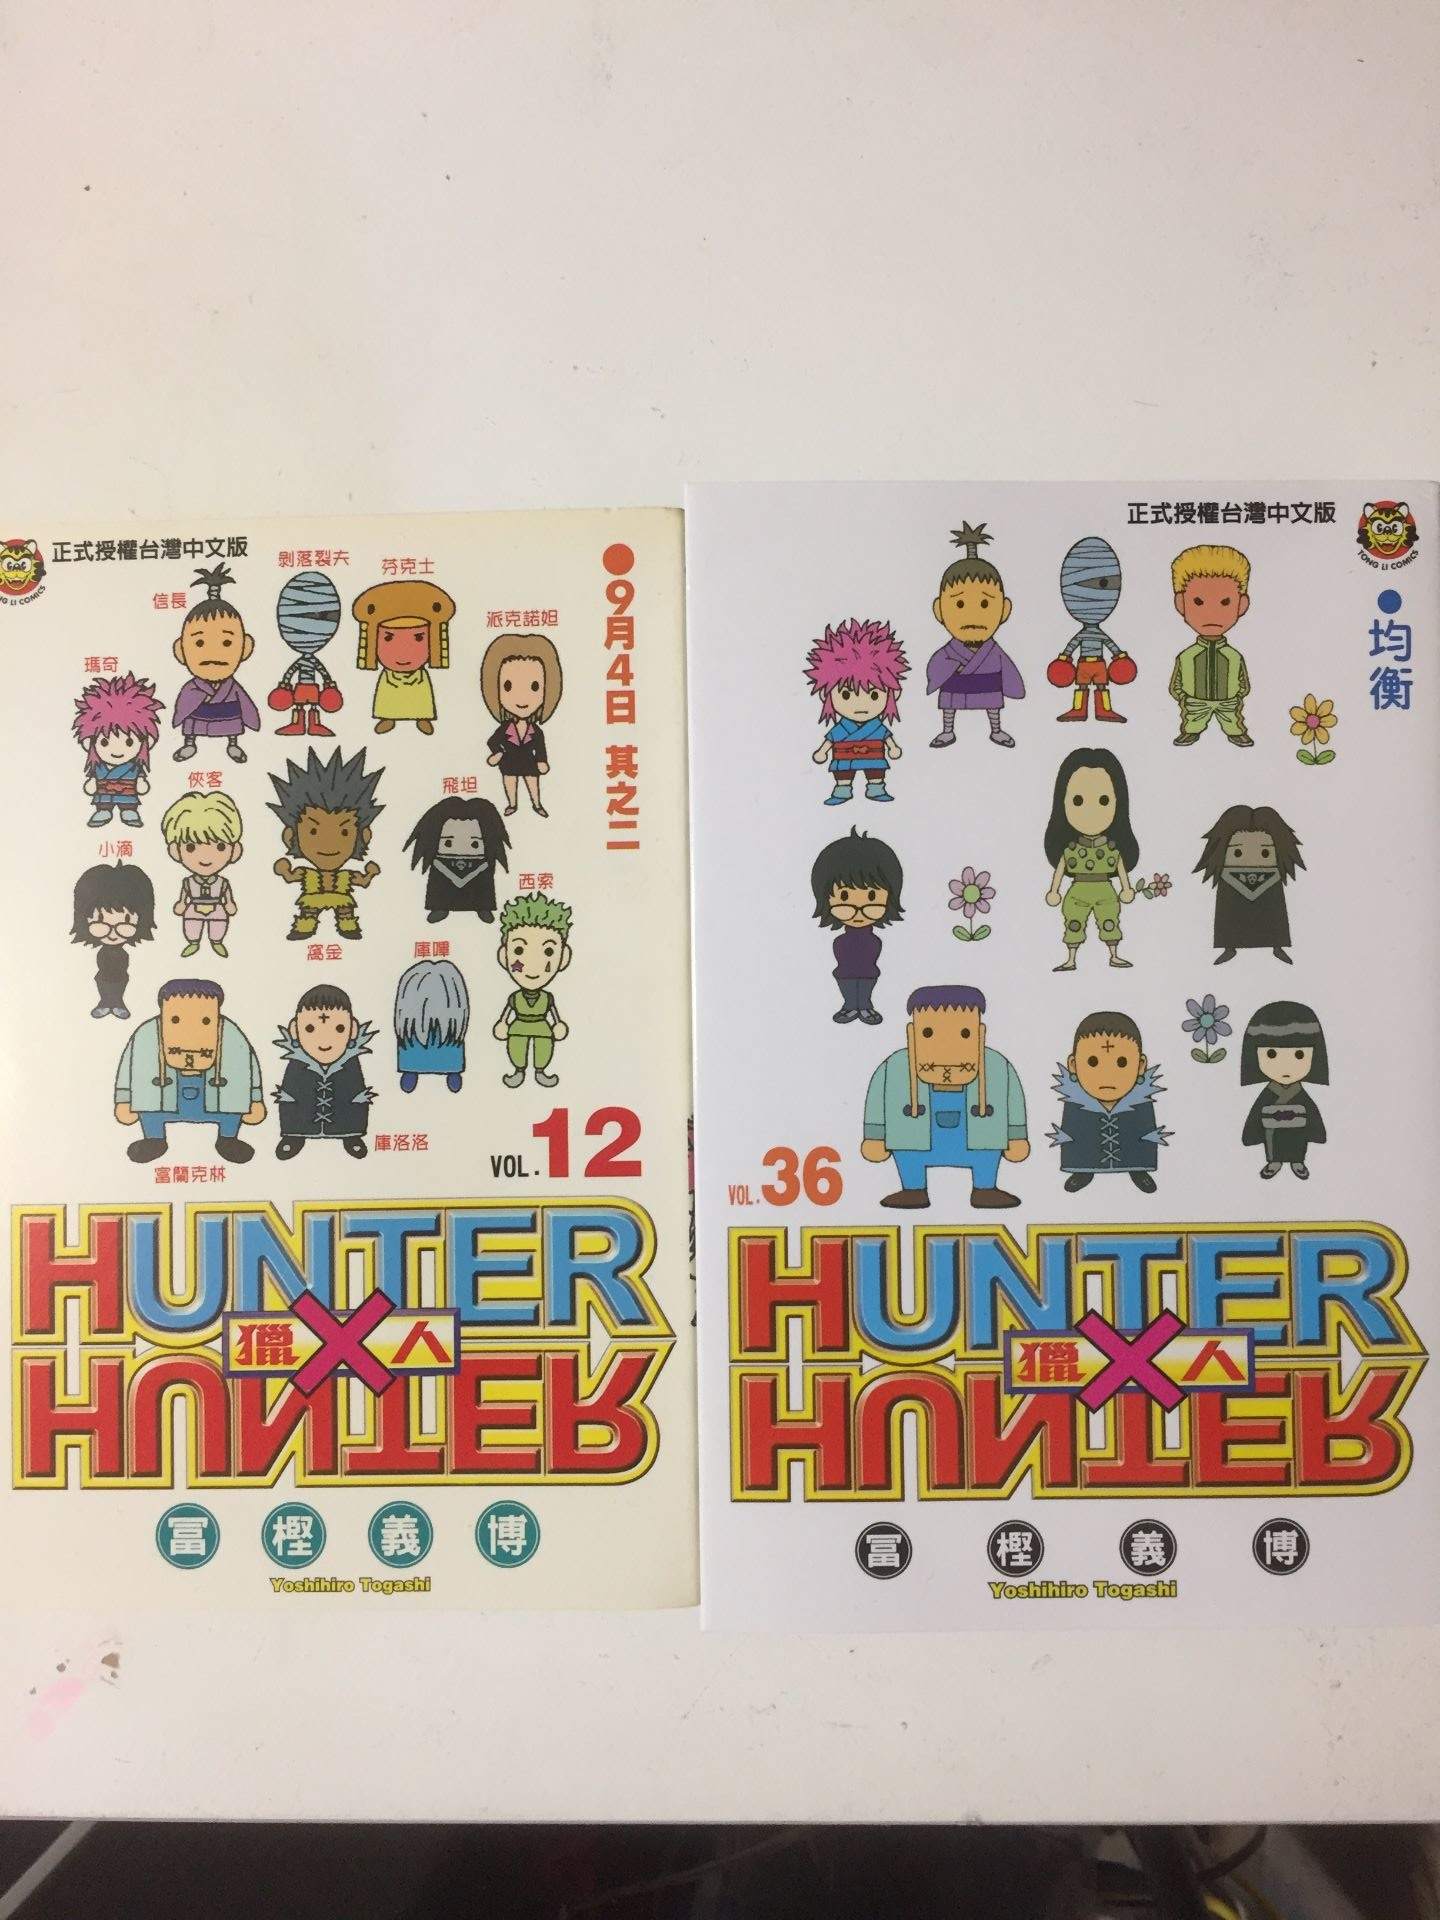 情報】獵人中文單行本36出版了@獵人Hunter x Hunter 哈啦板- 巴哈姆特